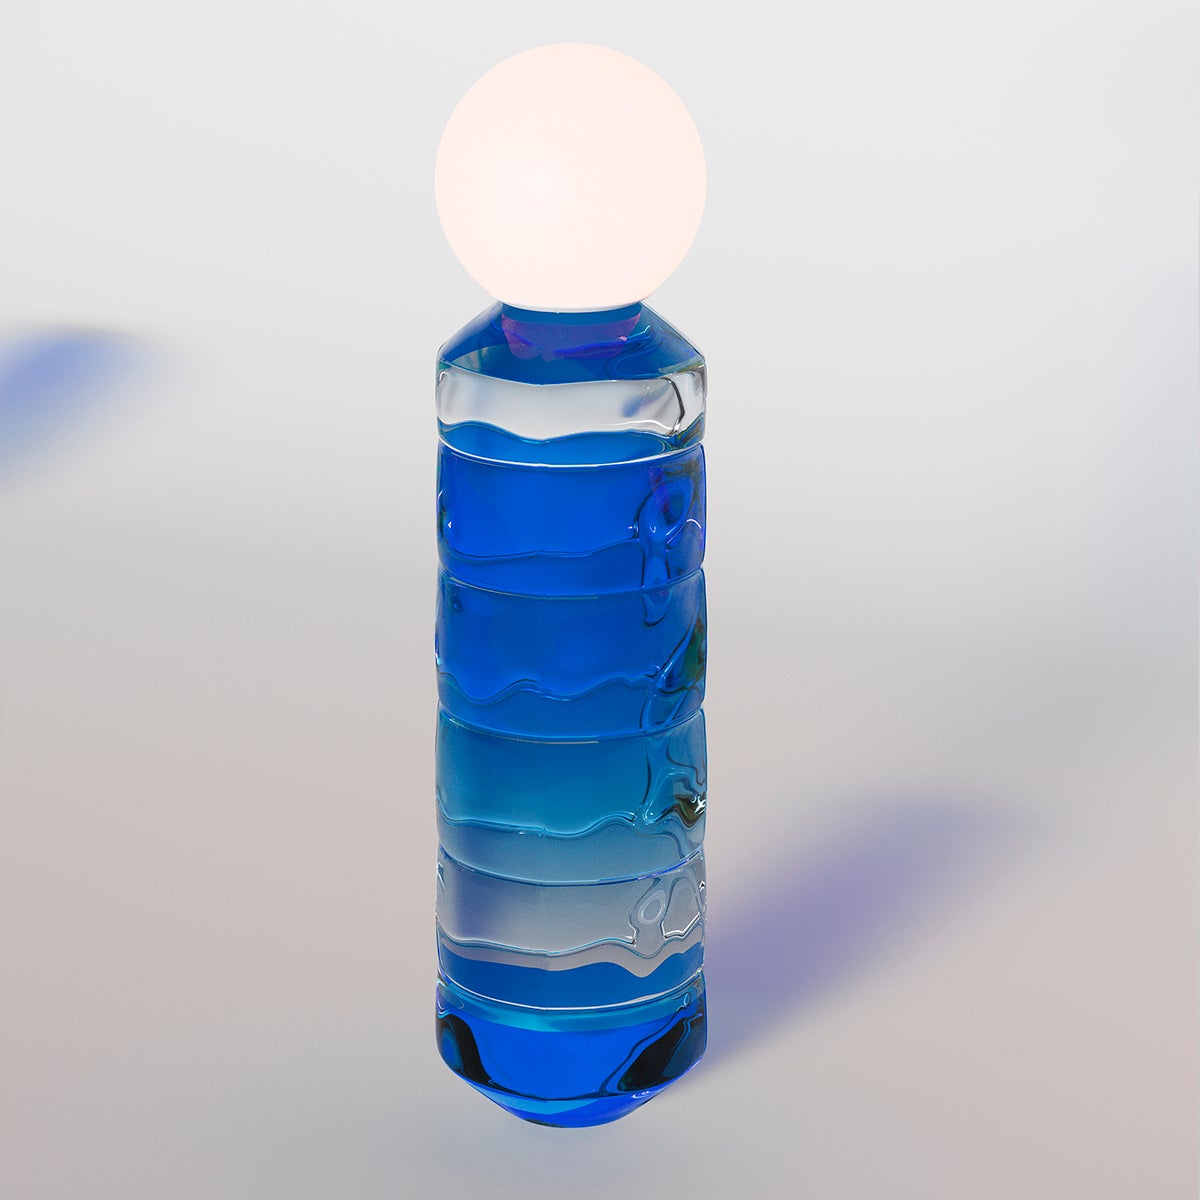 Tischlampe aus Glas, Navazi, 200x790 mm, moderne mundgeblasene Beleuchtung mit Glaskugel